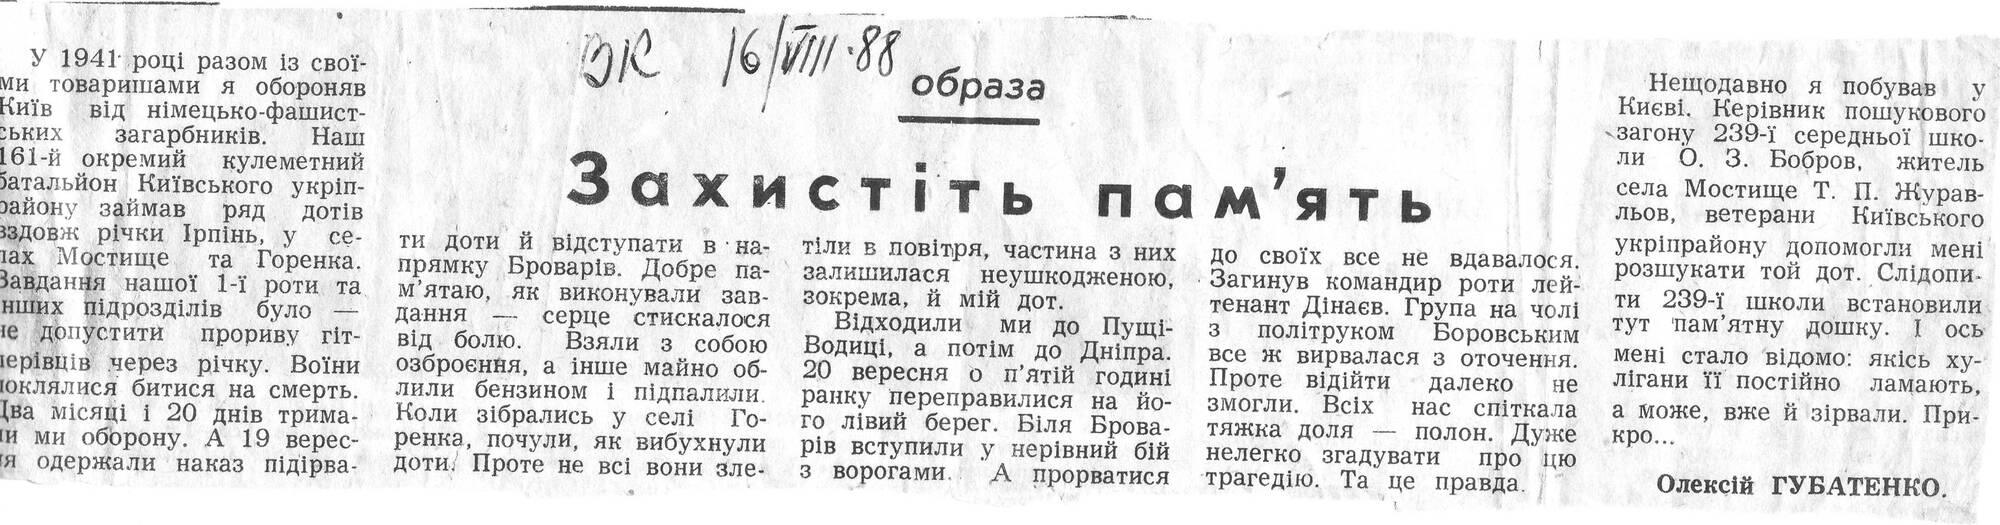 Статья 1988 год о вандализме возле ДОТ 481, написанная ветераном Алексеем Андреевичем Губатенко. бывшим сержантом 1 роты 161 отд. пулем. батальона